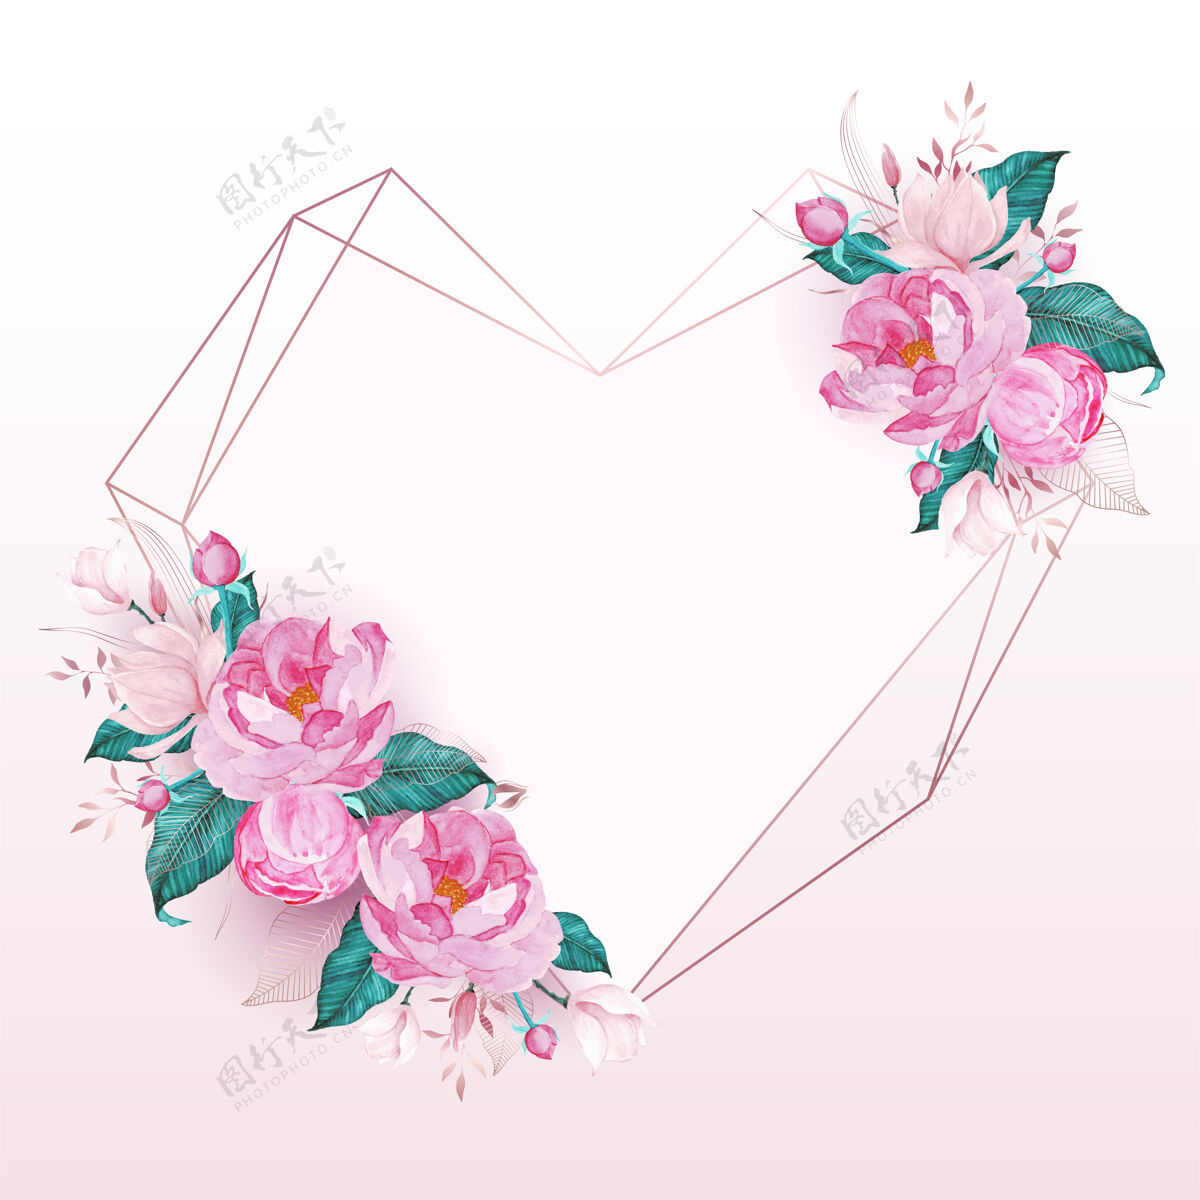 装饰玫瑰金心形框架 以水彩画风格的粉红色花朵装饰 用于制作婚礼请柬花卉玫瑰金花卉